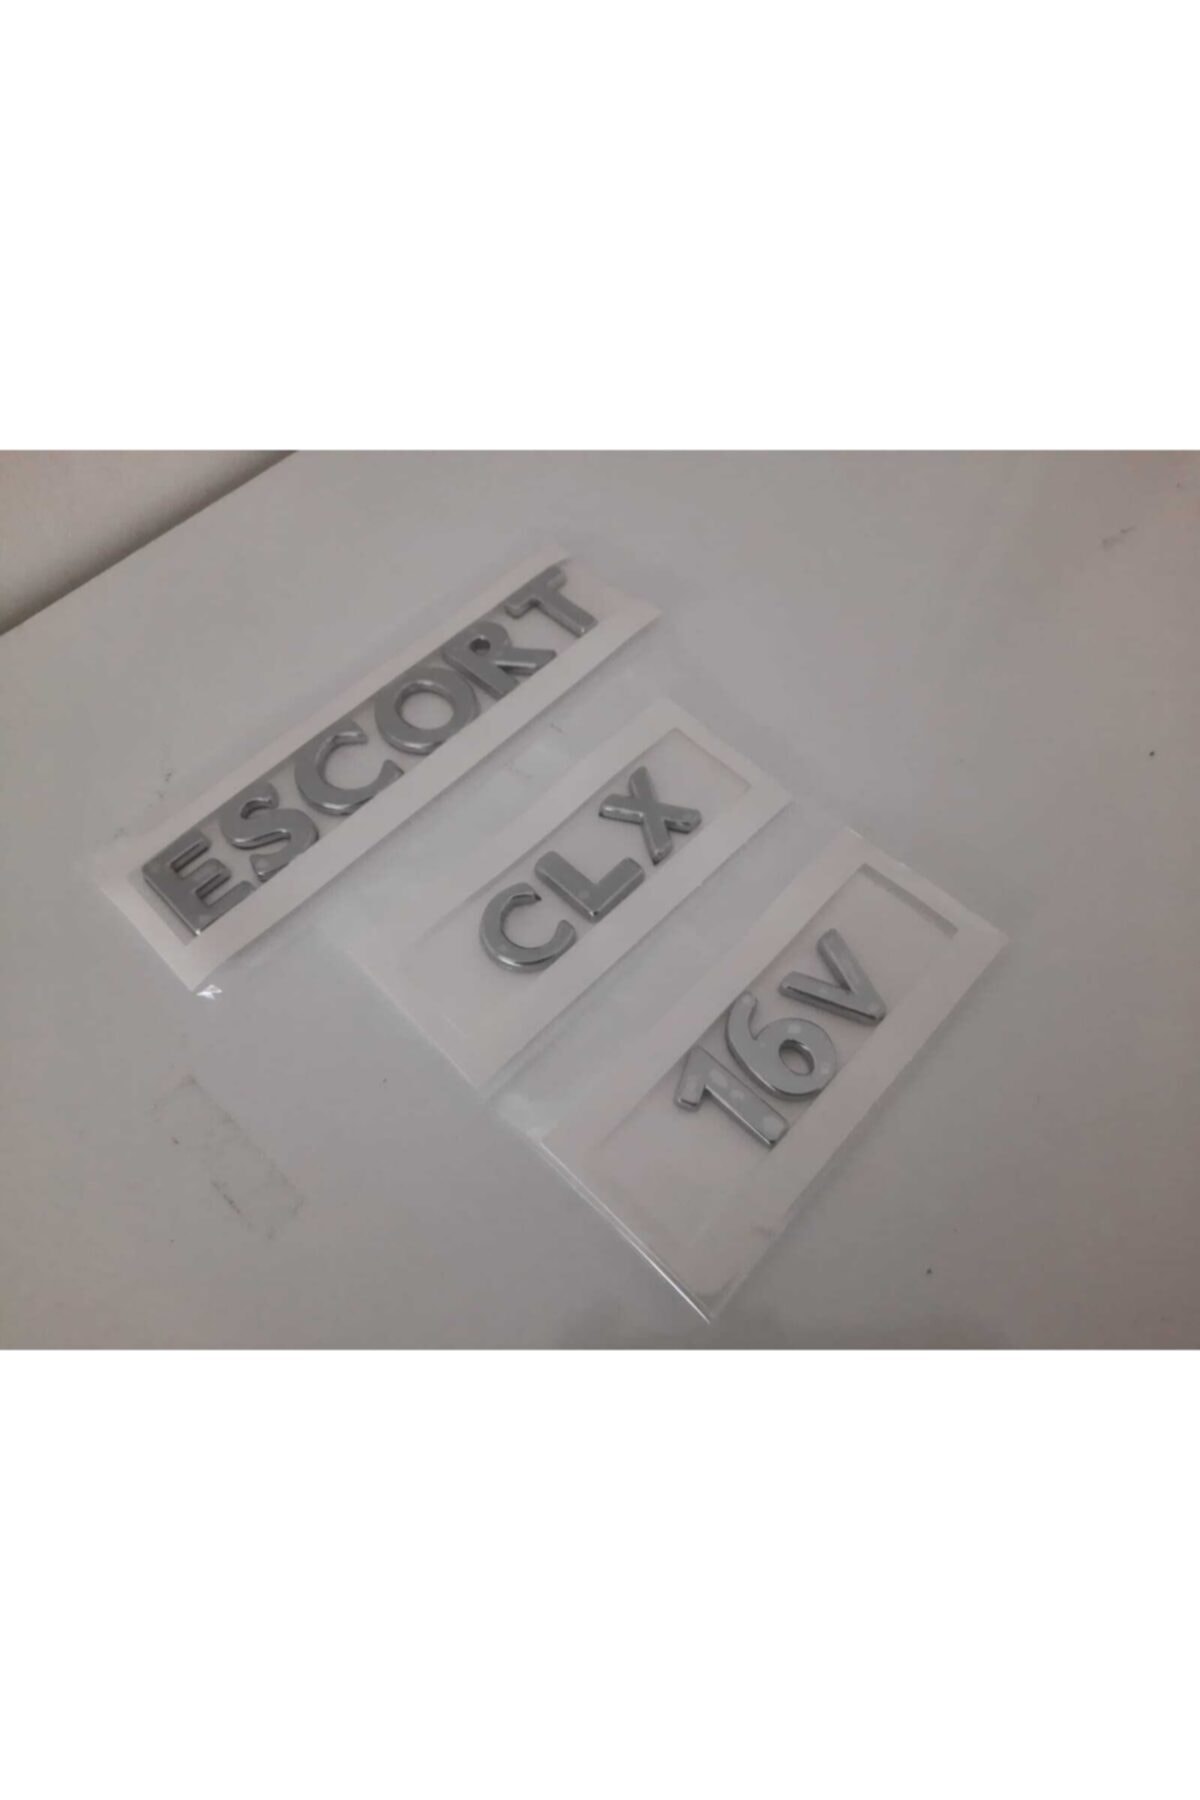 Escort Clx 16v Yazı-3 Adet Takım